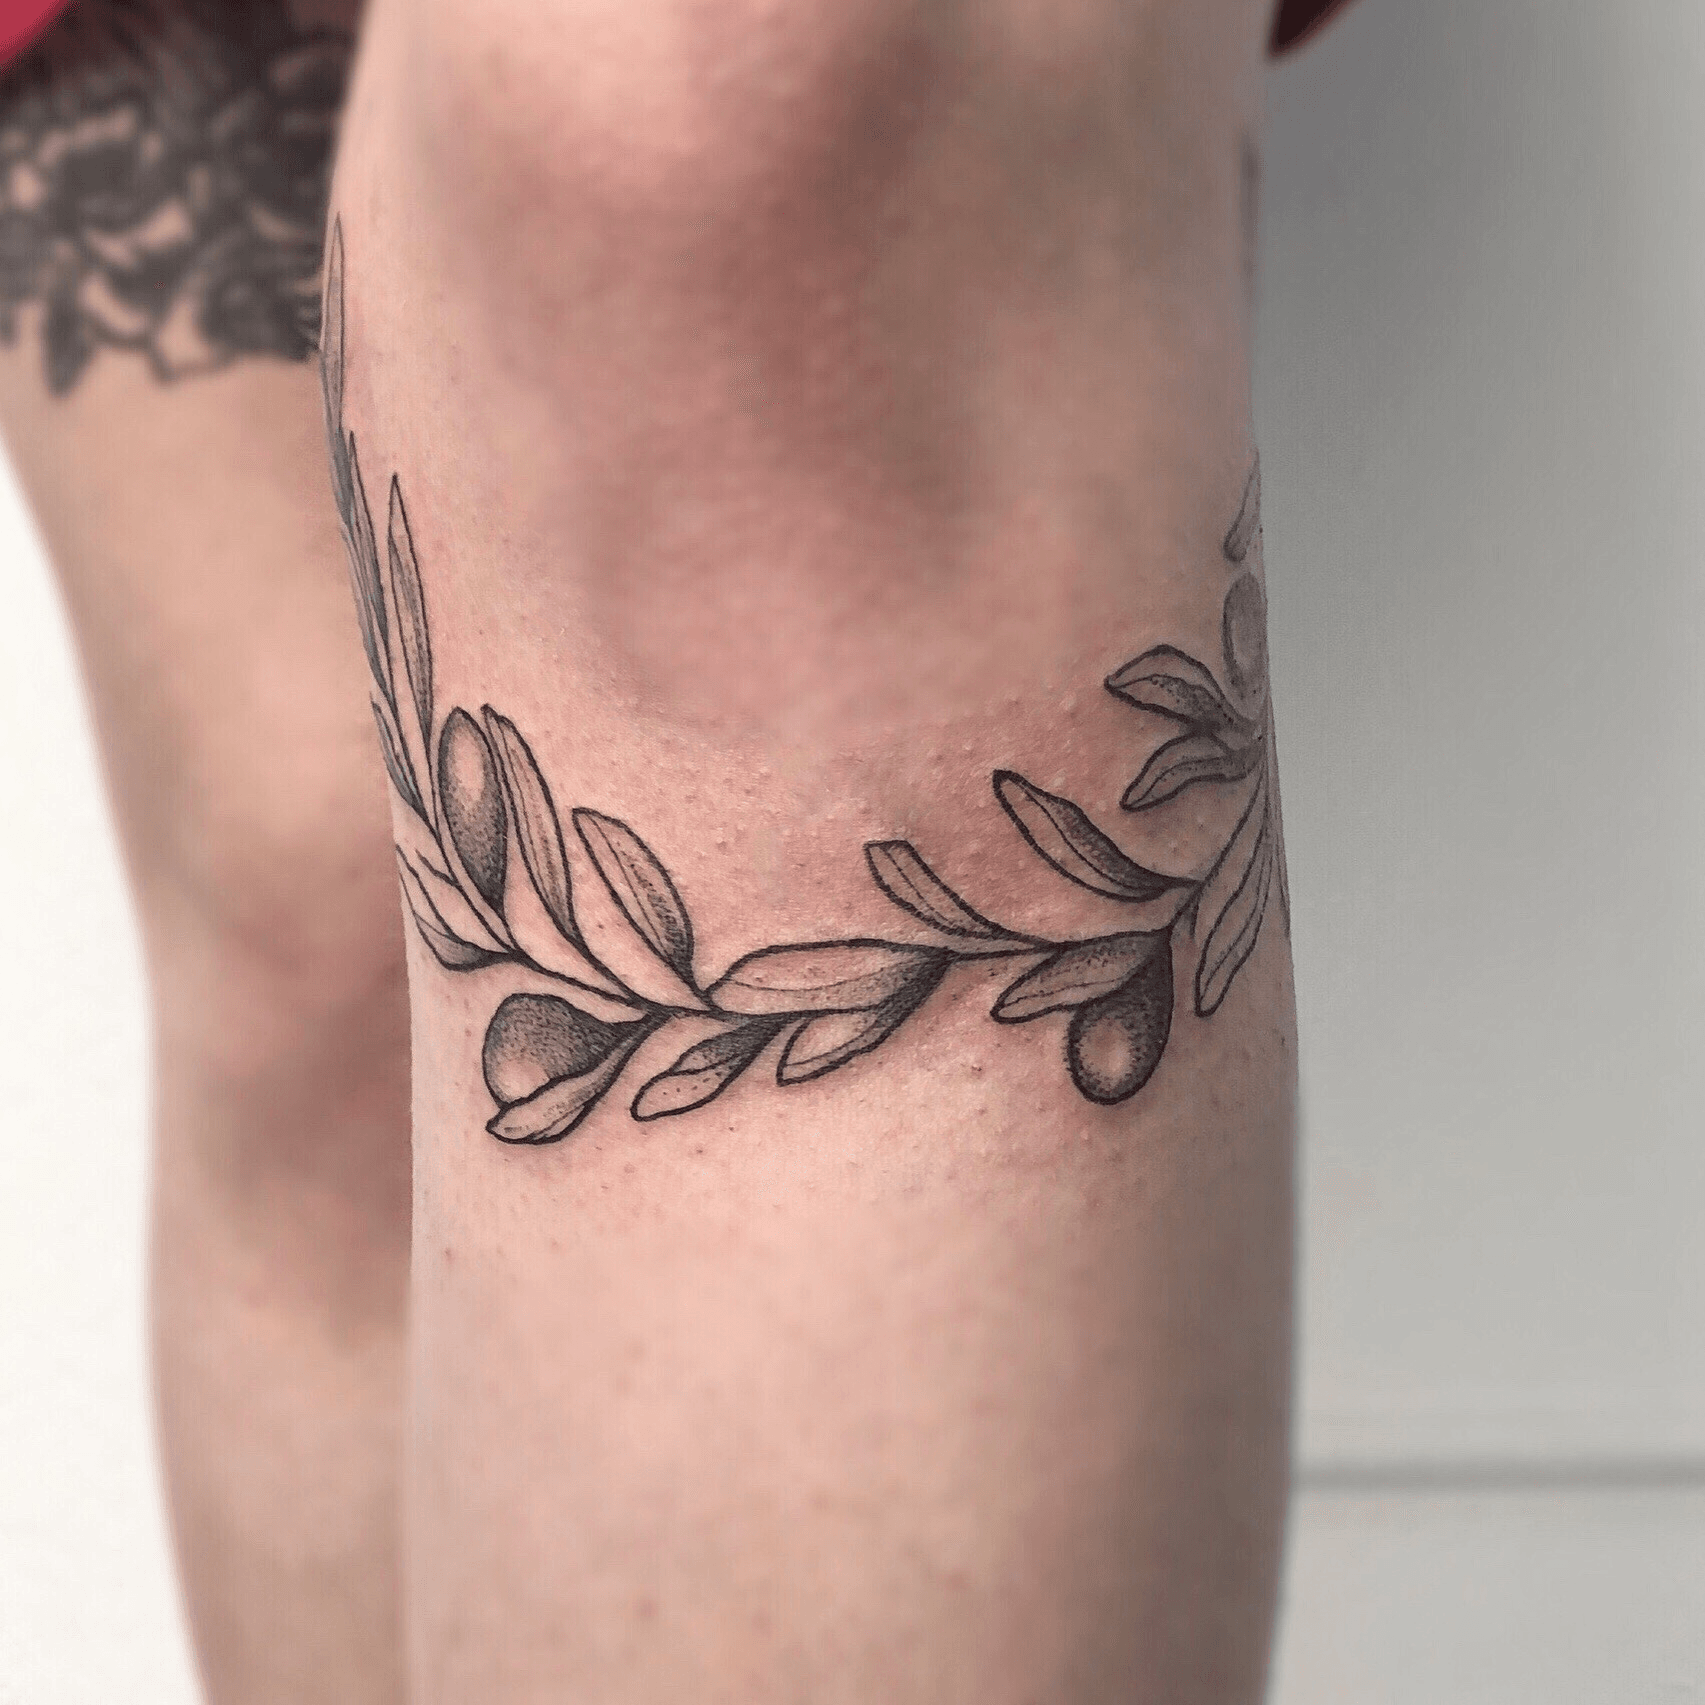 next tattoo idea a custom olive branchtraditiona  Tumbex